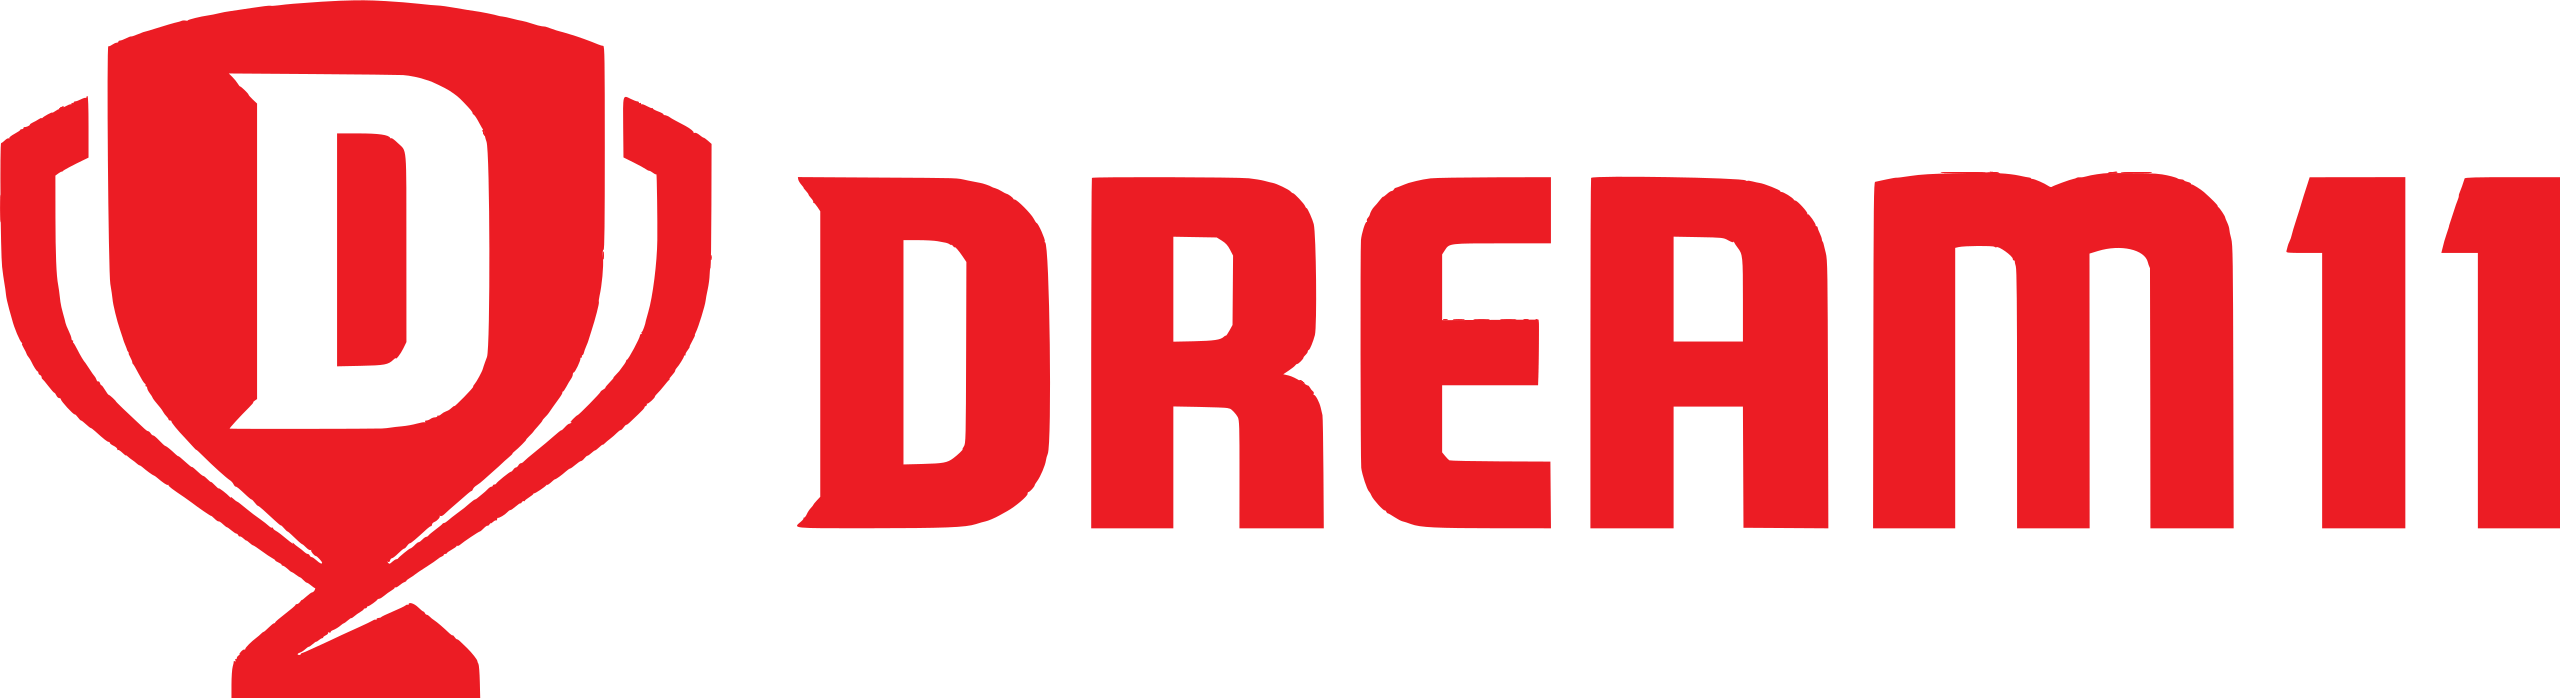 Dream11 Logo Image